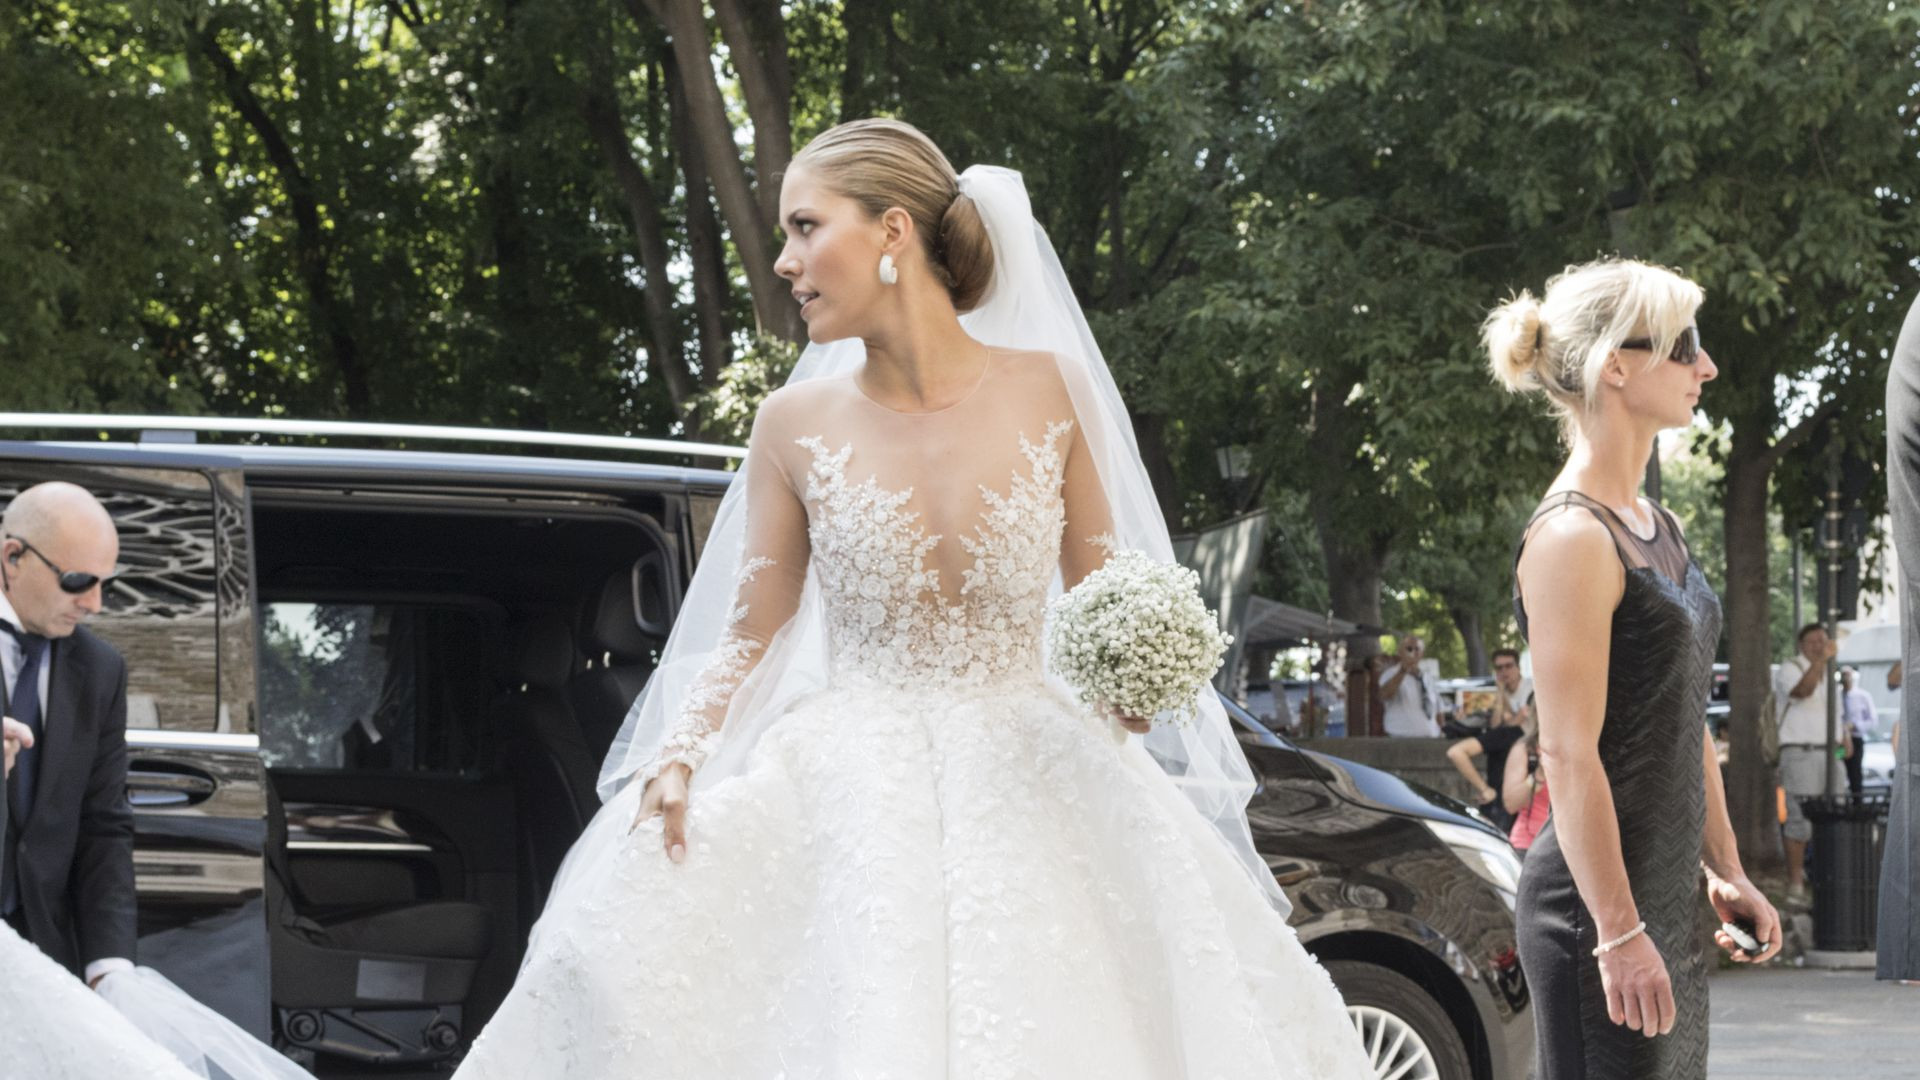 Hochzeitskleid Victoria Swarovski
 Weißer Traum ER steckt hinter Vicky Swarovskis Brautkleid